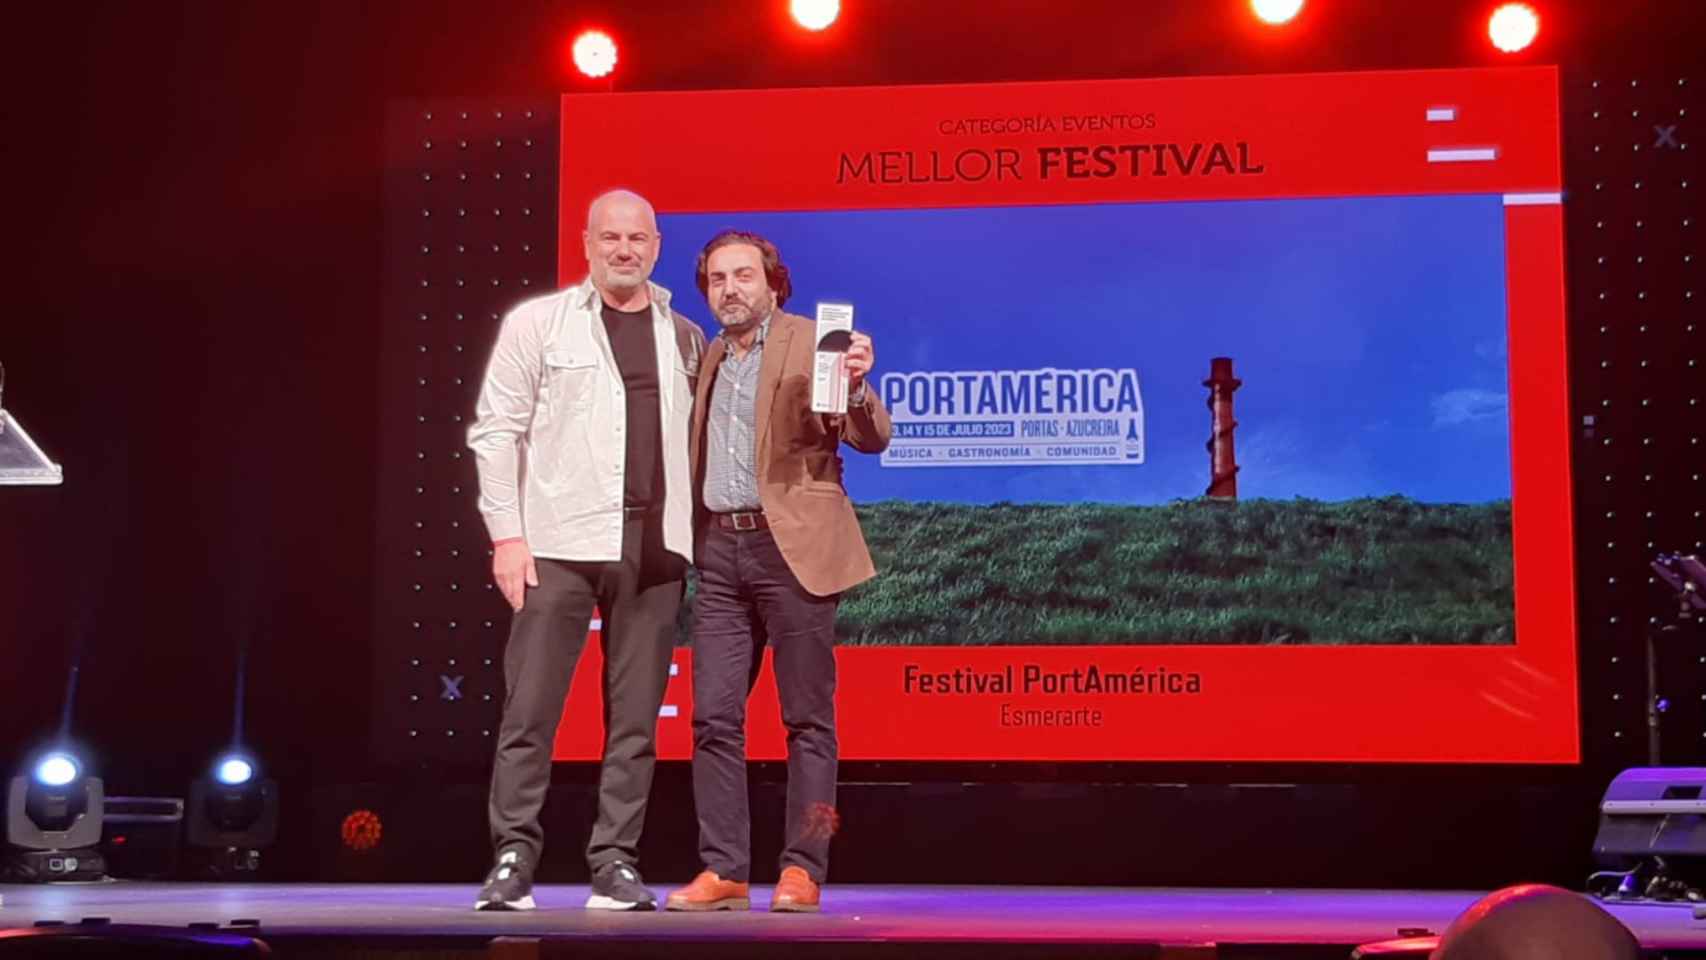 Los Premios Paraugas destacan al PortAmérica como Mejor Festival